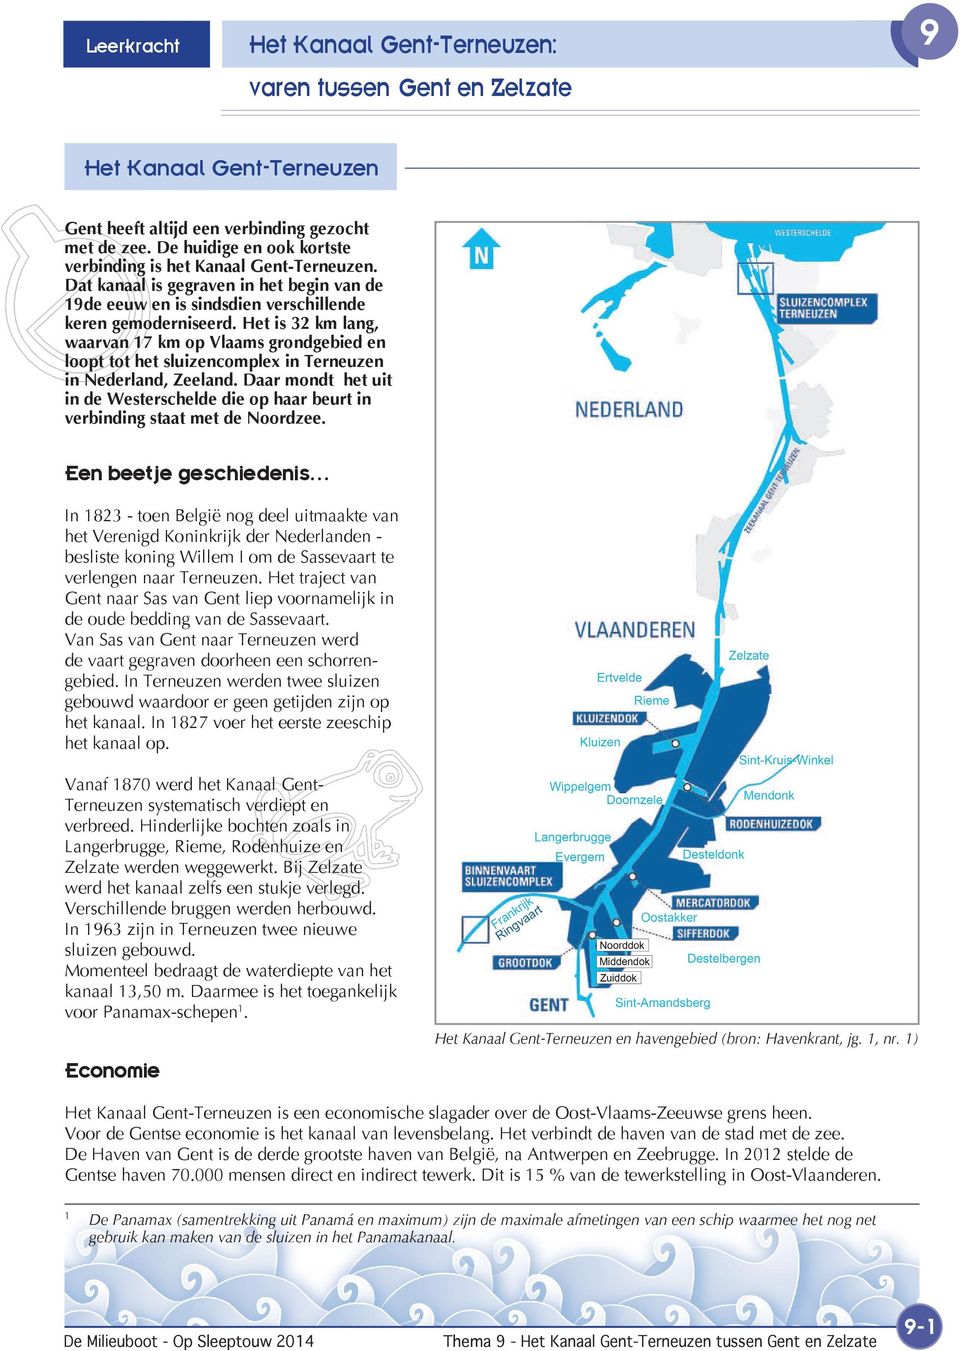 Het is 32 km lang, waarvan 17 km op Vlaams grondgebied en loopt tot het sluizencomplex in Terneuzen in Nederland, Zeeland.